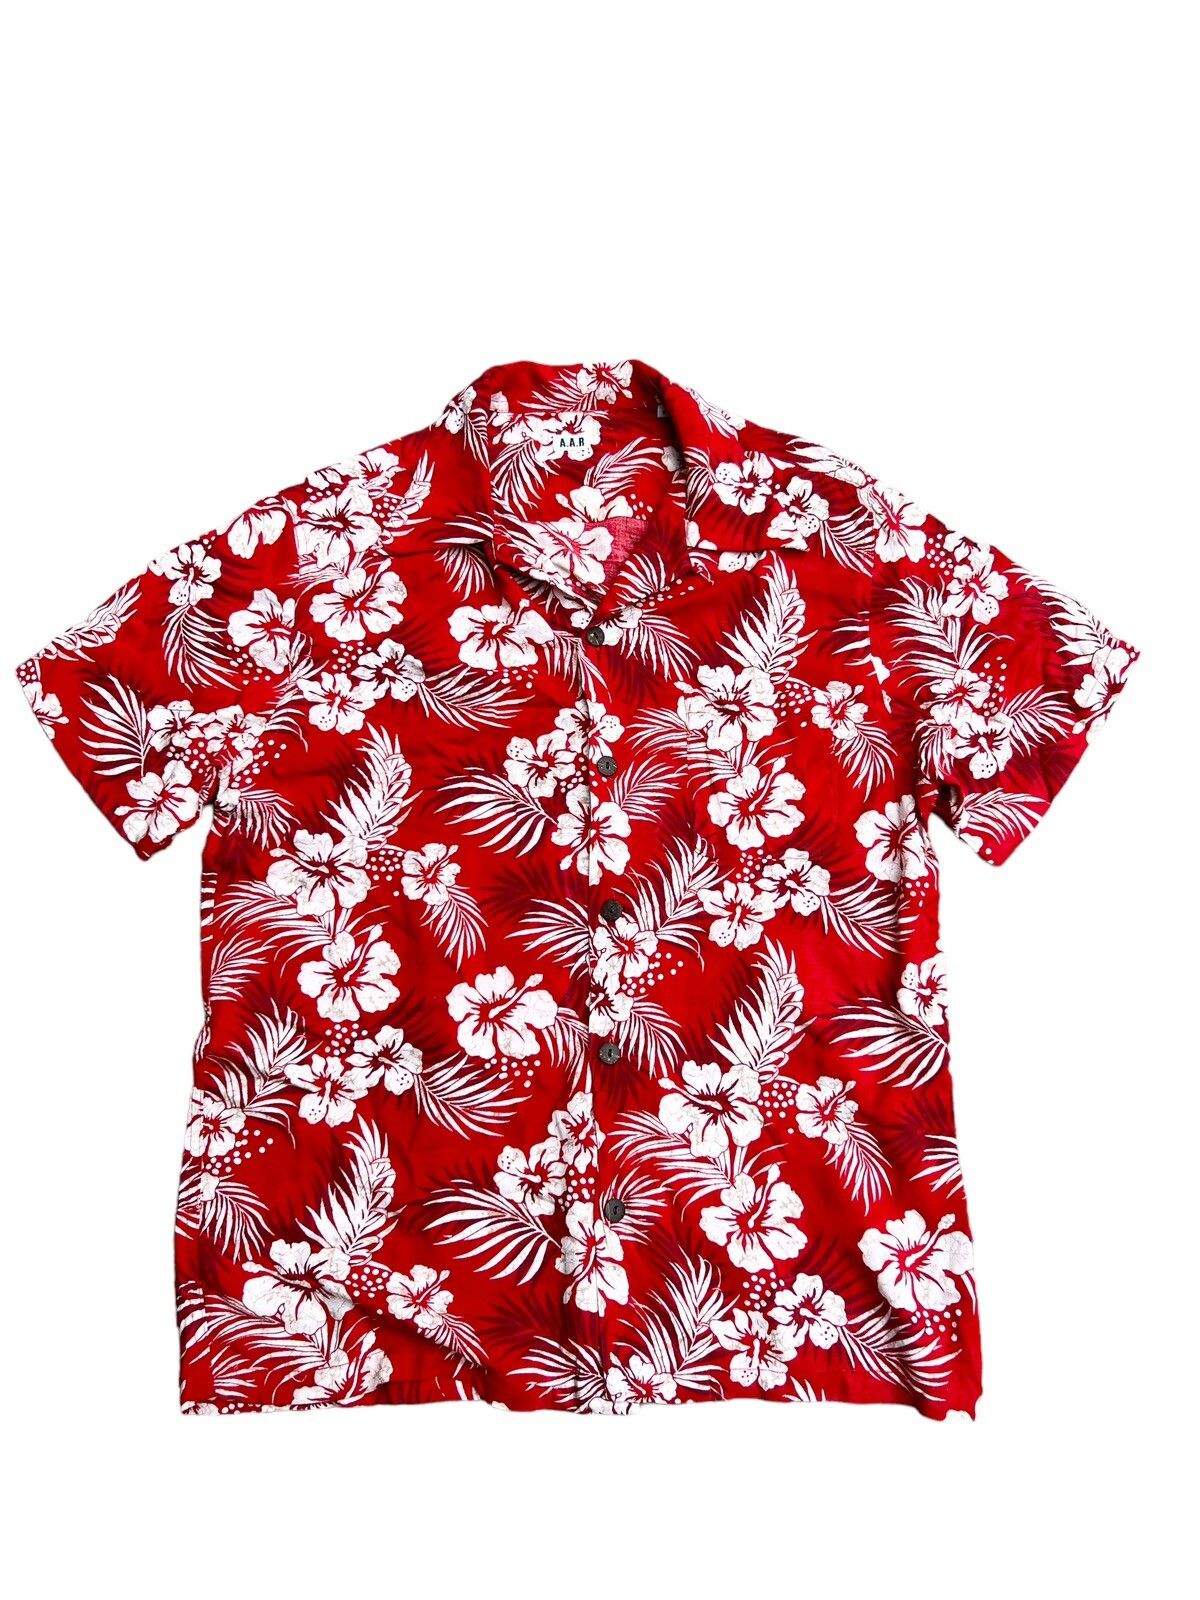 Yohji Yamamoto Yohji Yamamoto AAR Hawaiian Floral Rayon Shirt | Grailed